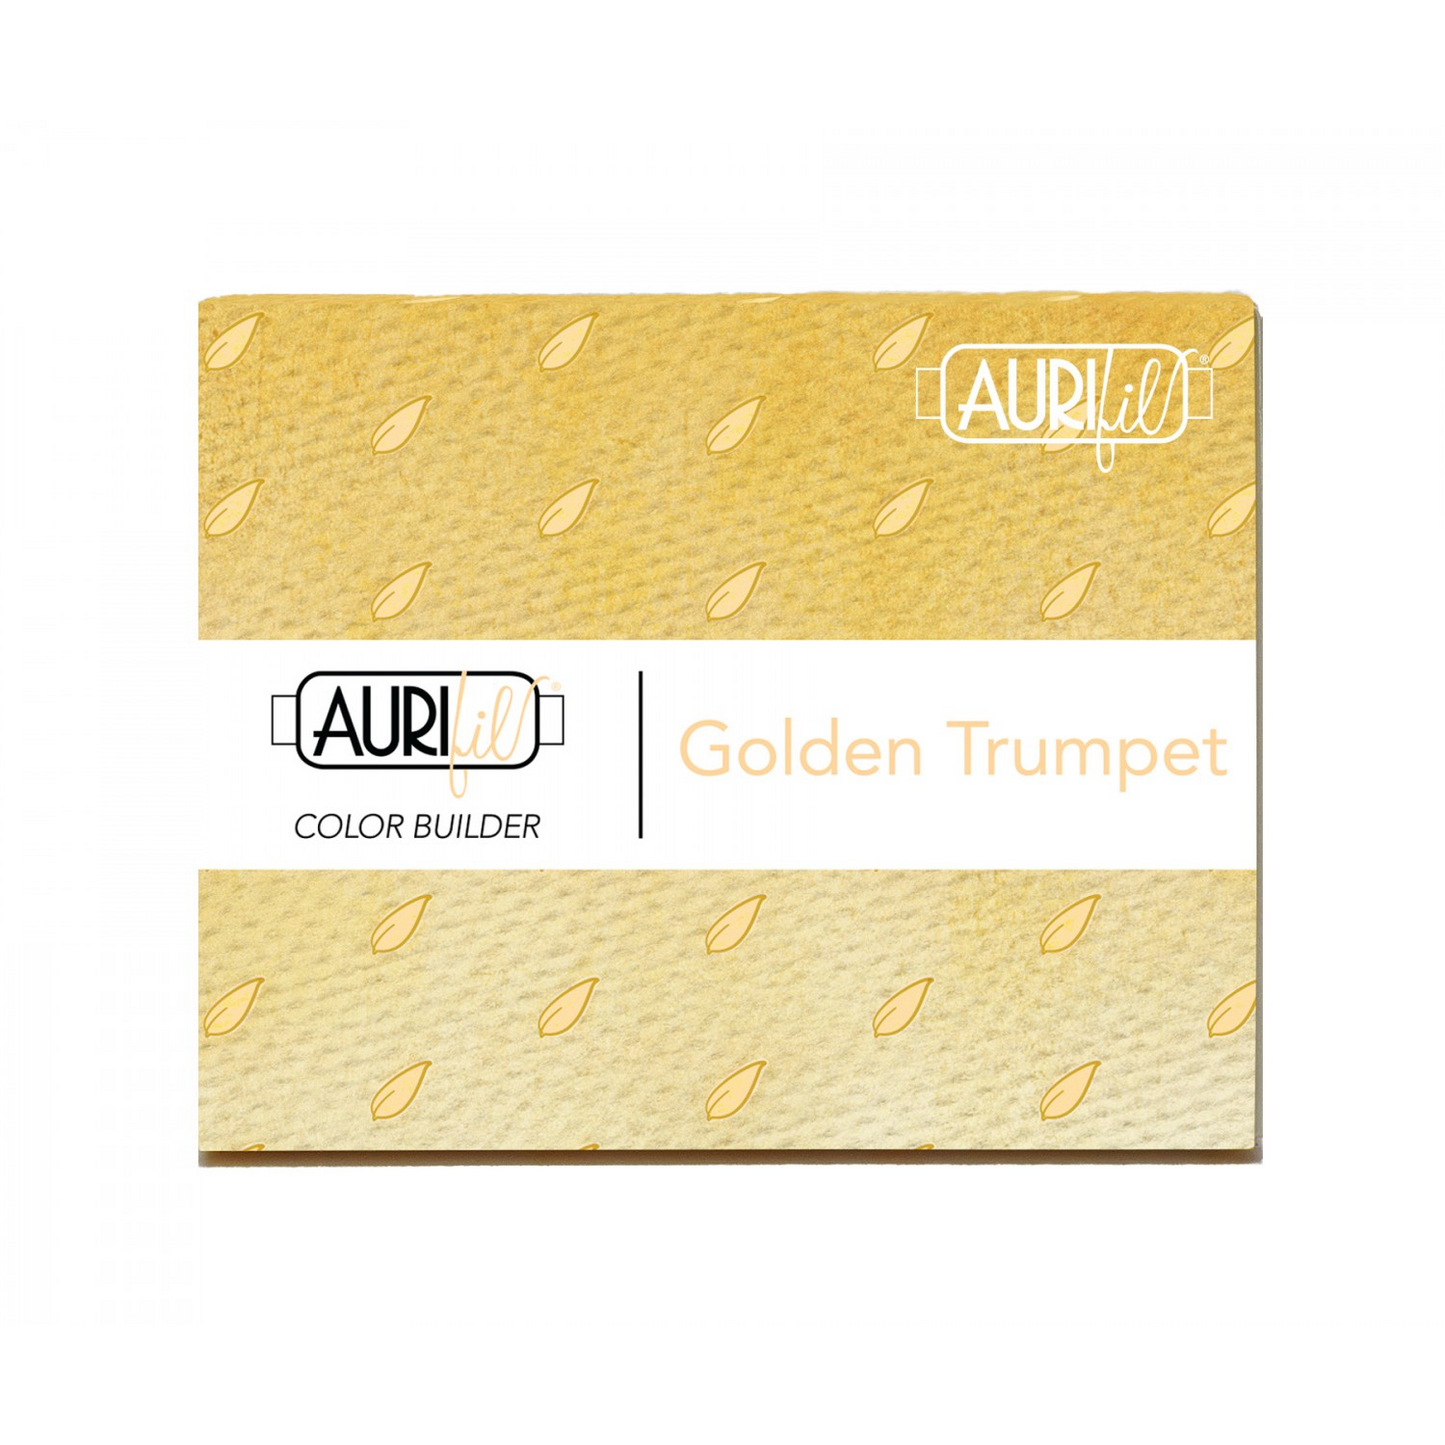 Aurifil Color Builder 3 Piece Set | Golden Trumpet